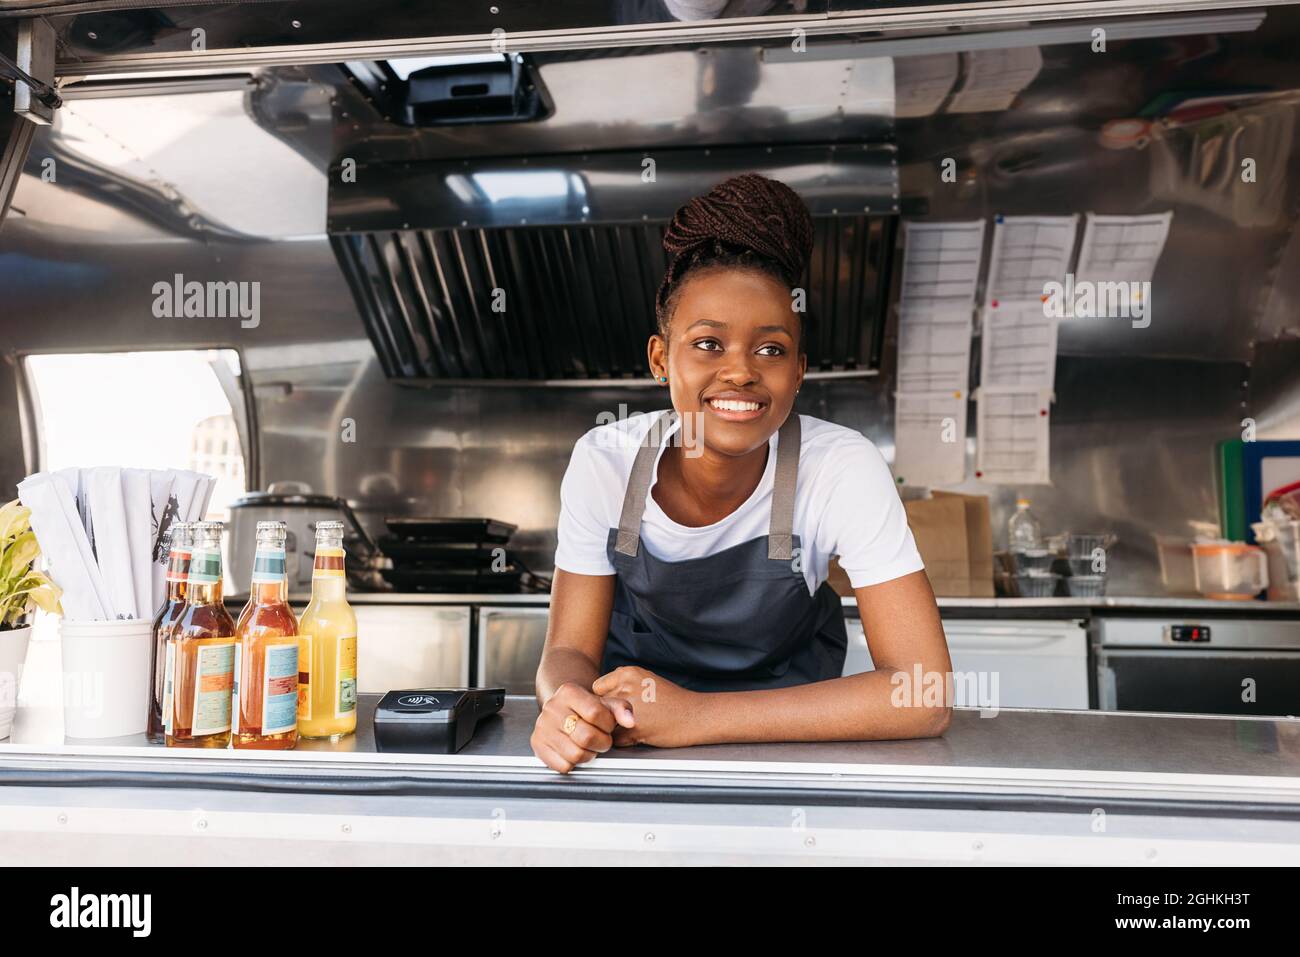 Porträt der jungen Kleinunternehmerin, die in ihrem Food-Truck auf Kunden wartet Stockfoto